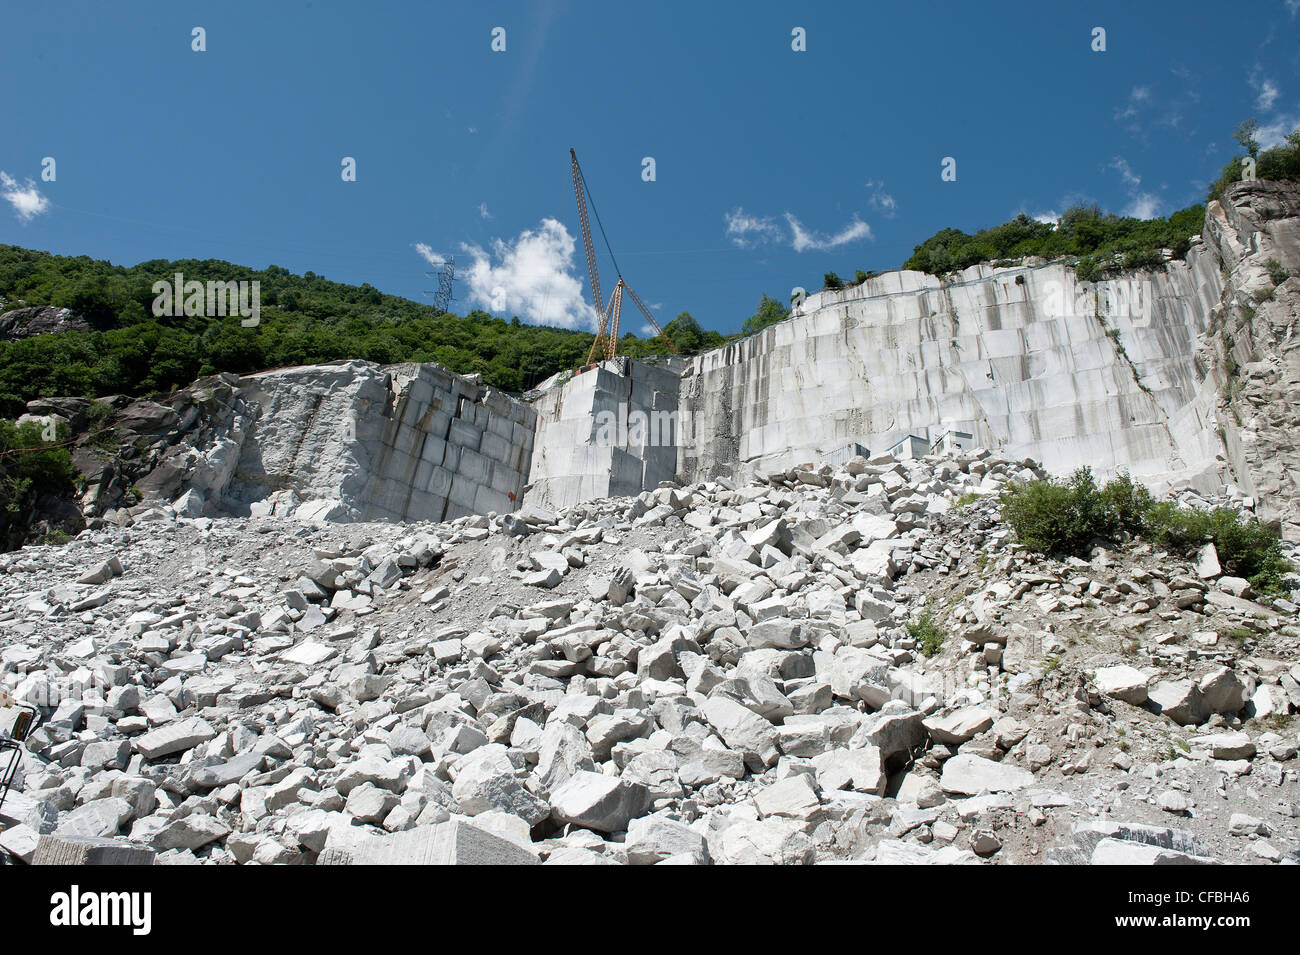 La Svizzera, Ticino, iragna, cava, granito, pietre, industria, miniere Foto  stock - Alamy